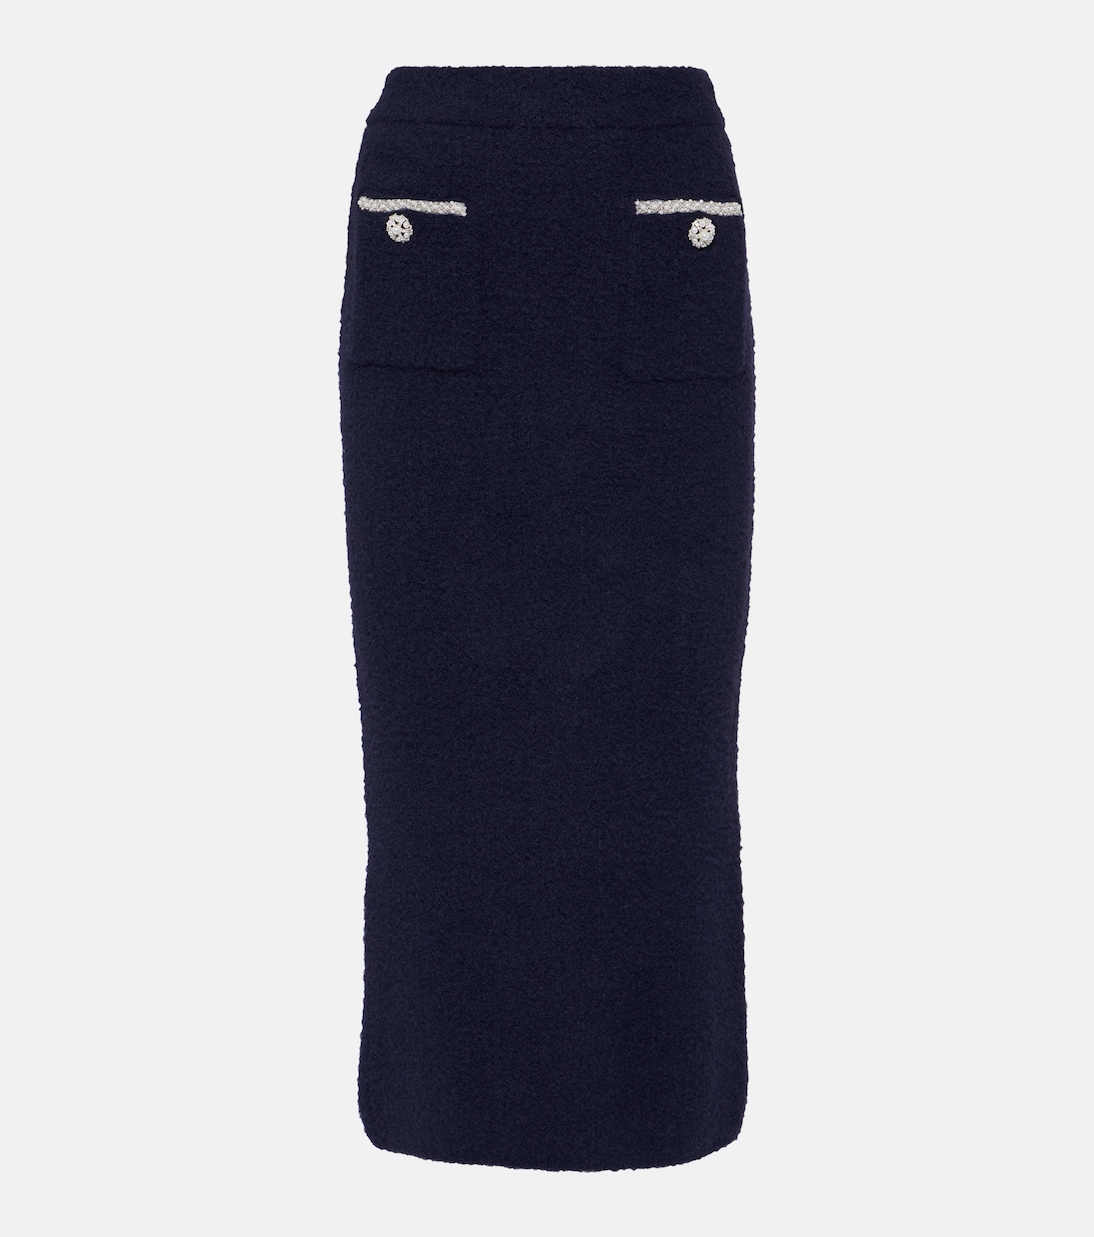 Украшенная трикотажная юбка миди с высокой посадкой Self-Portrait, синий